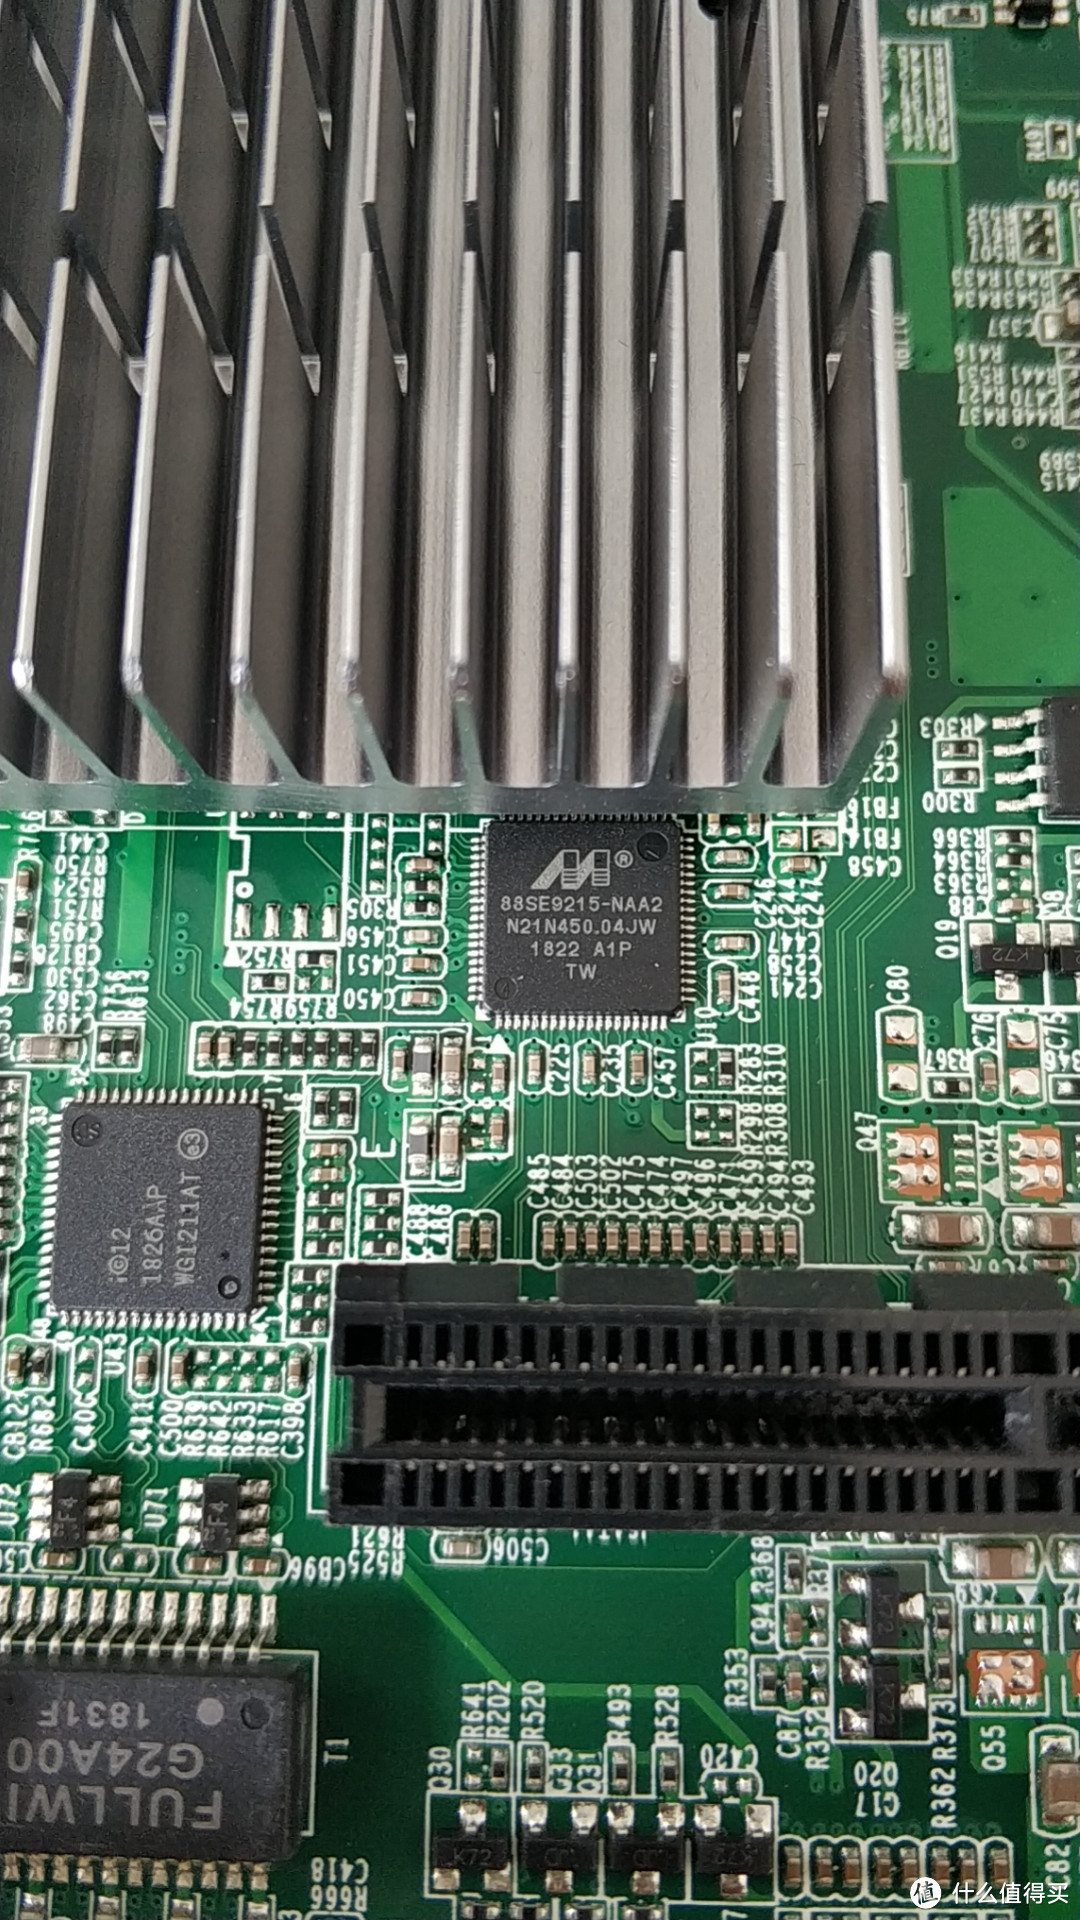 马牌88SE9215，PCIE转SATA桥接芯片。